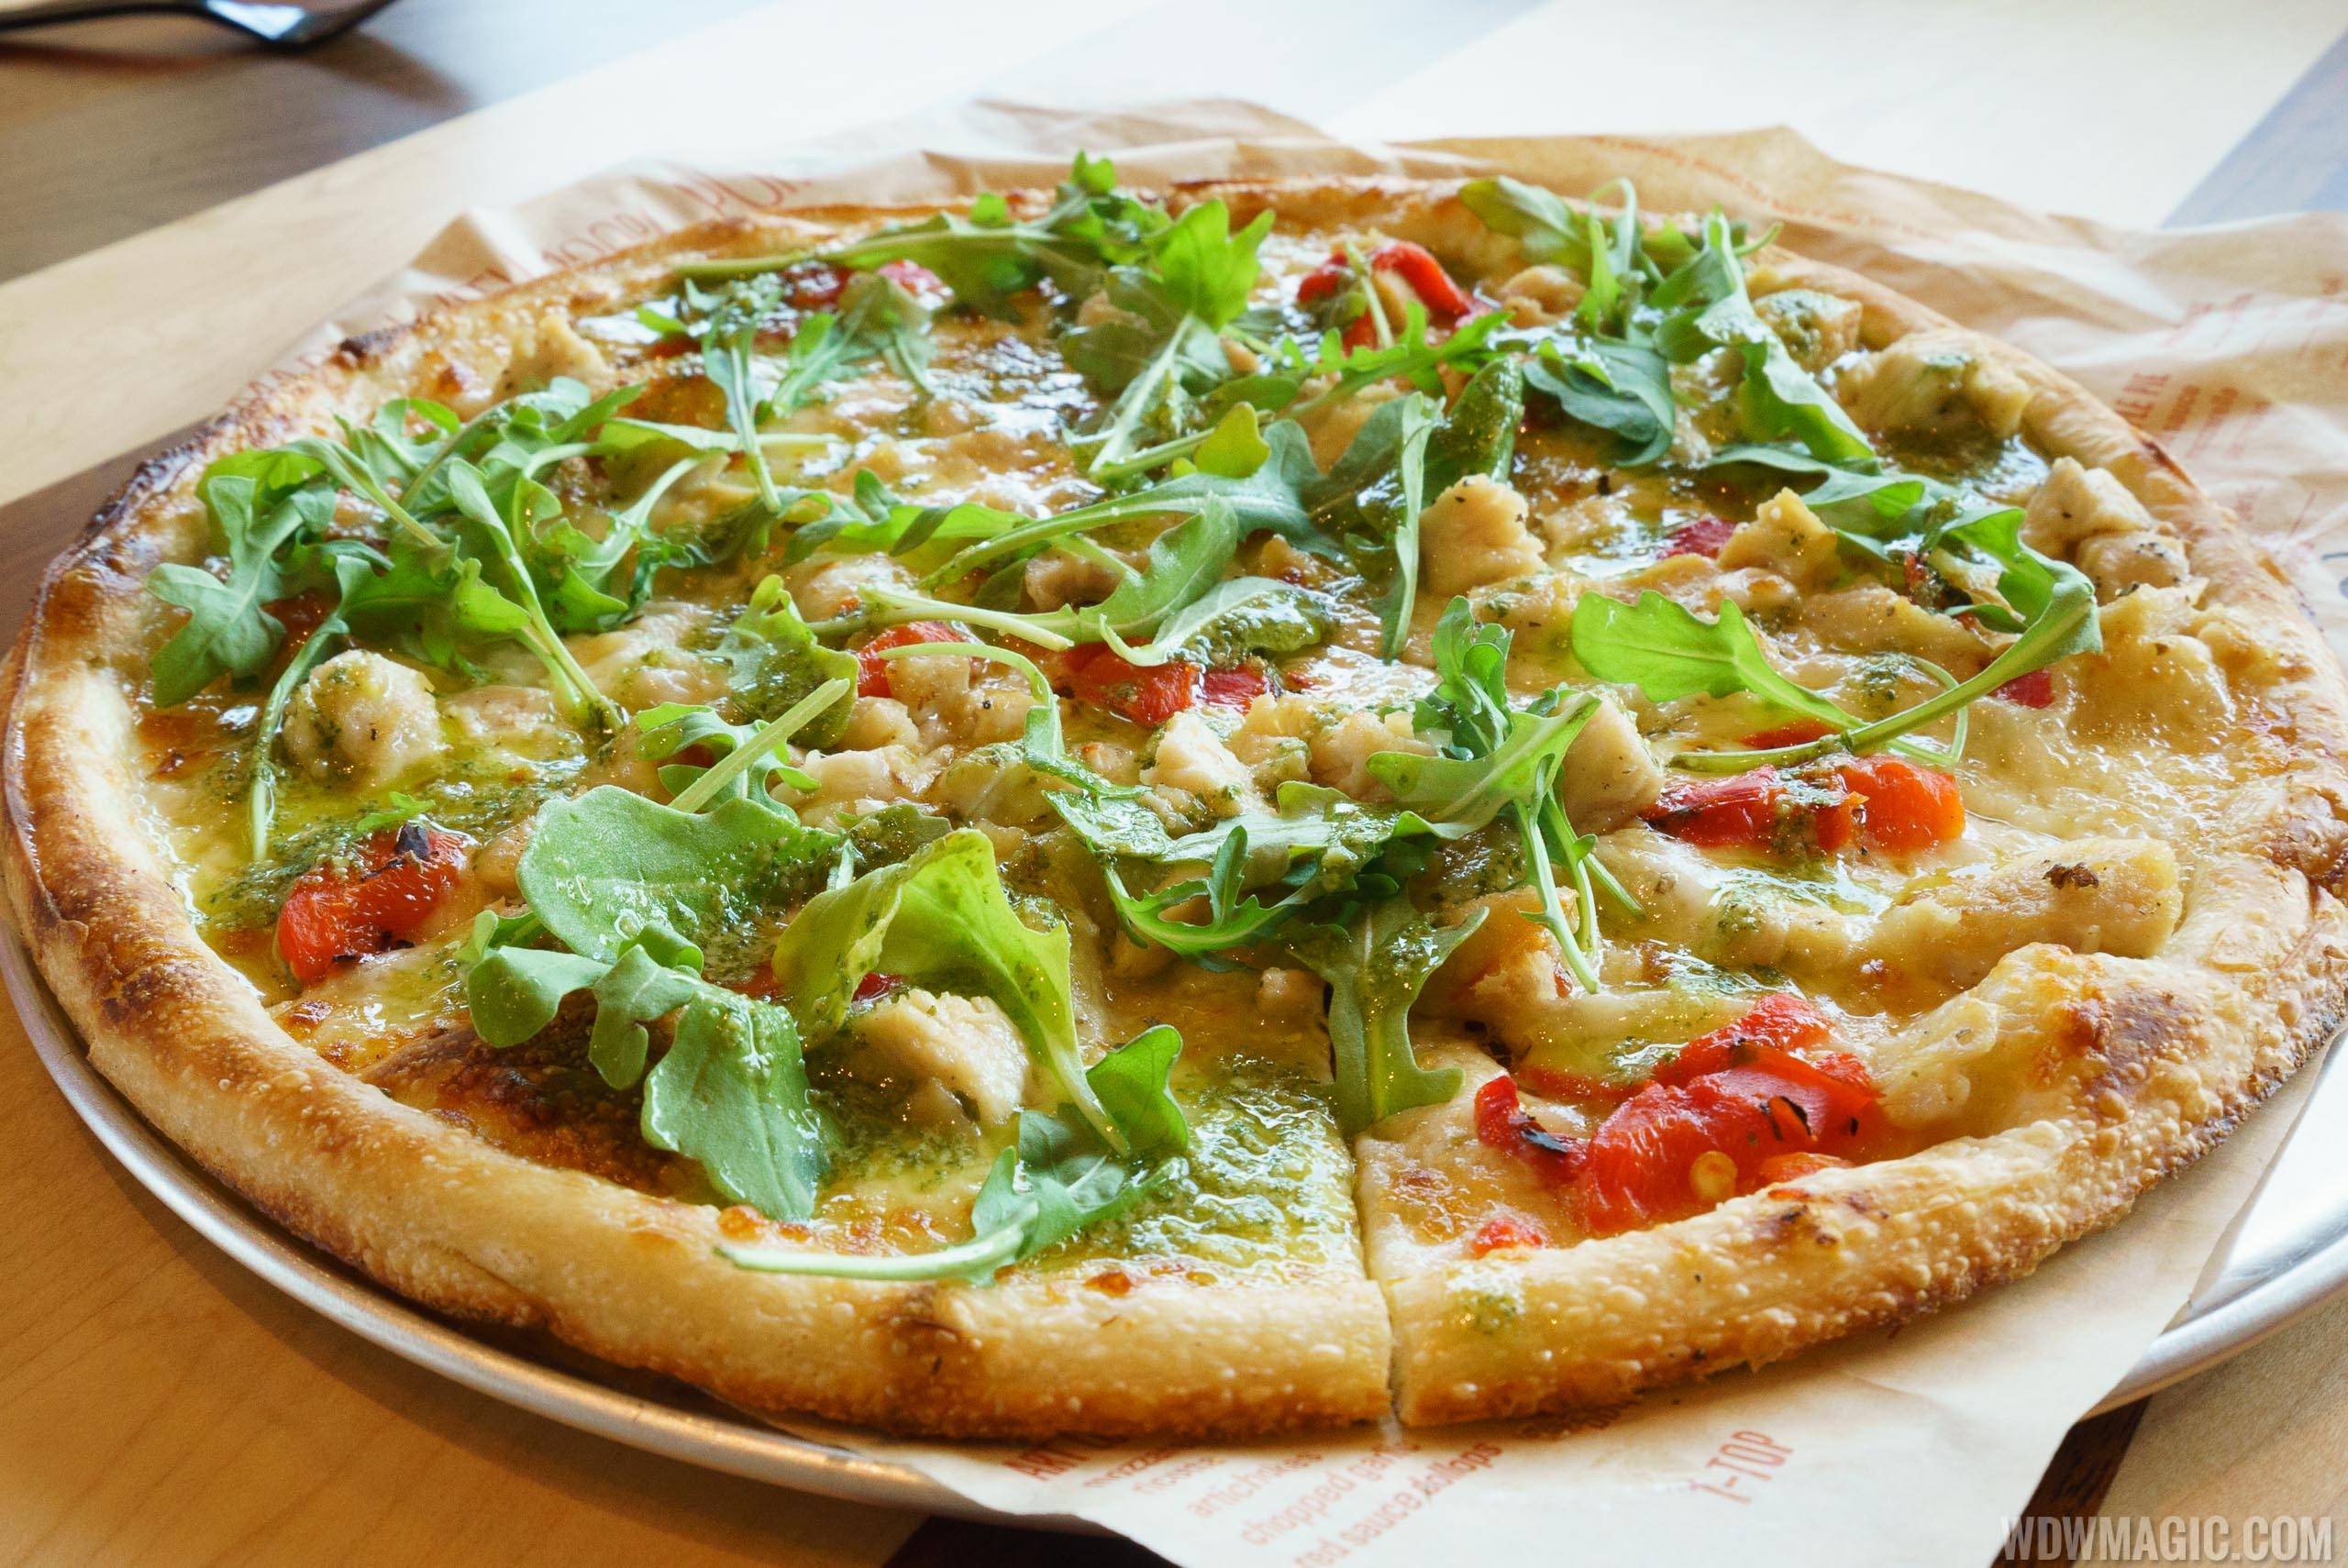 Blaze Pizza - Green Stripe signature pizza - Pesto Drizzle over Chicken, Red Peppers, Garlic, Mozzarella and Arugula